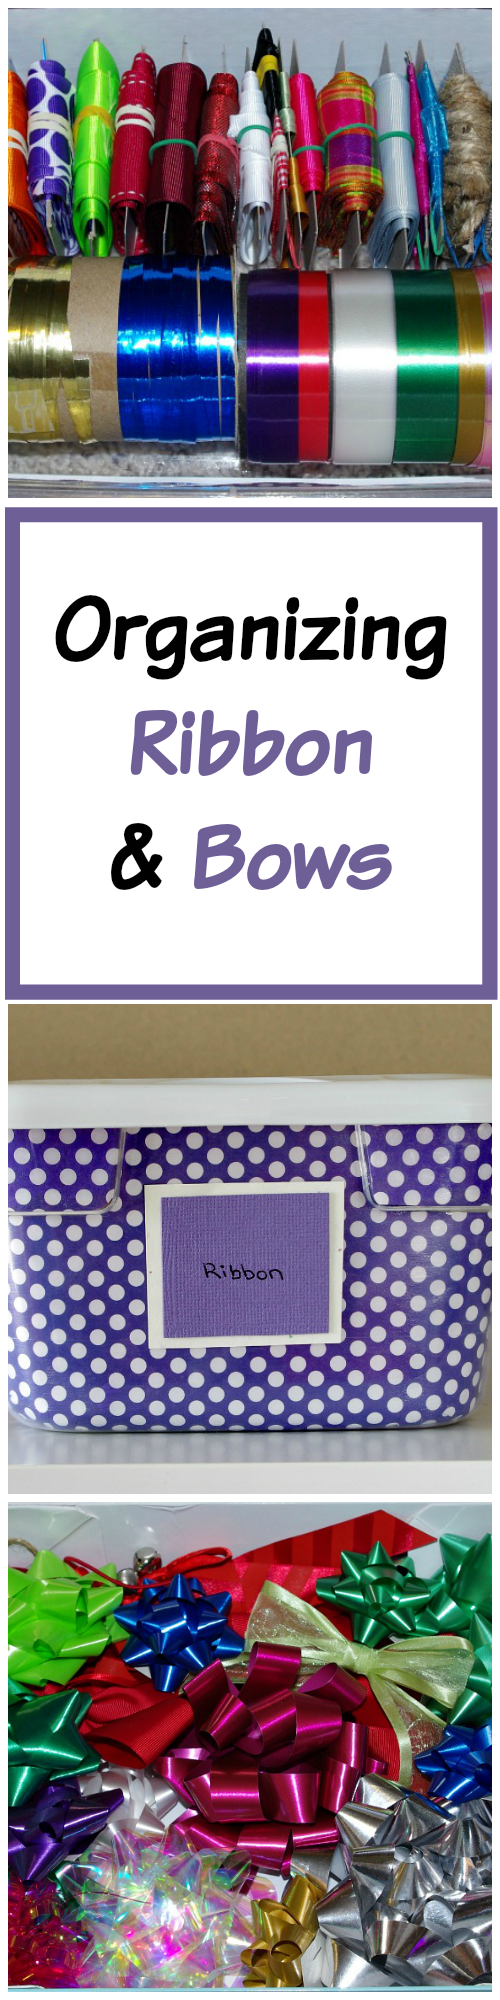 Organizing, Ribbon, Bows, Gift Bag, Cereal Box, Gift Wrapping Supplies, Organizing with Cereal Boxes